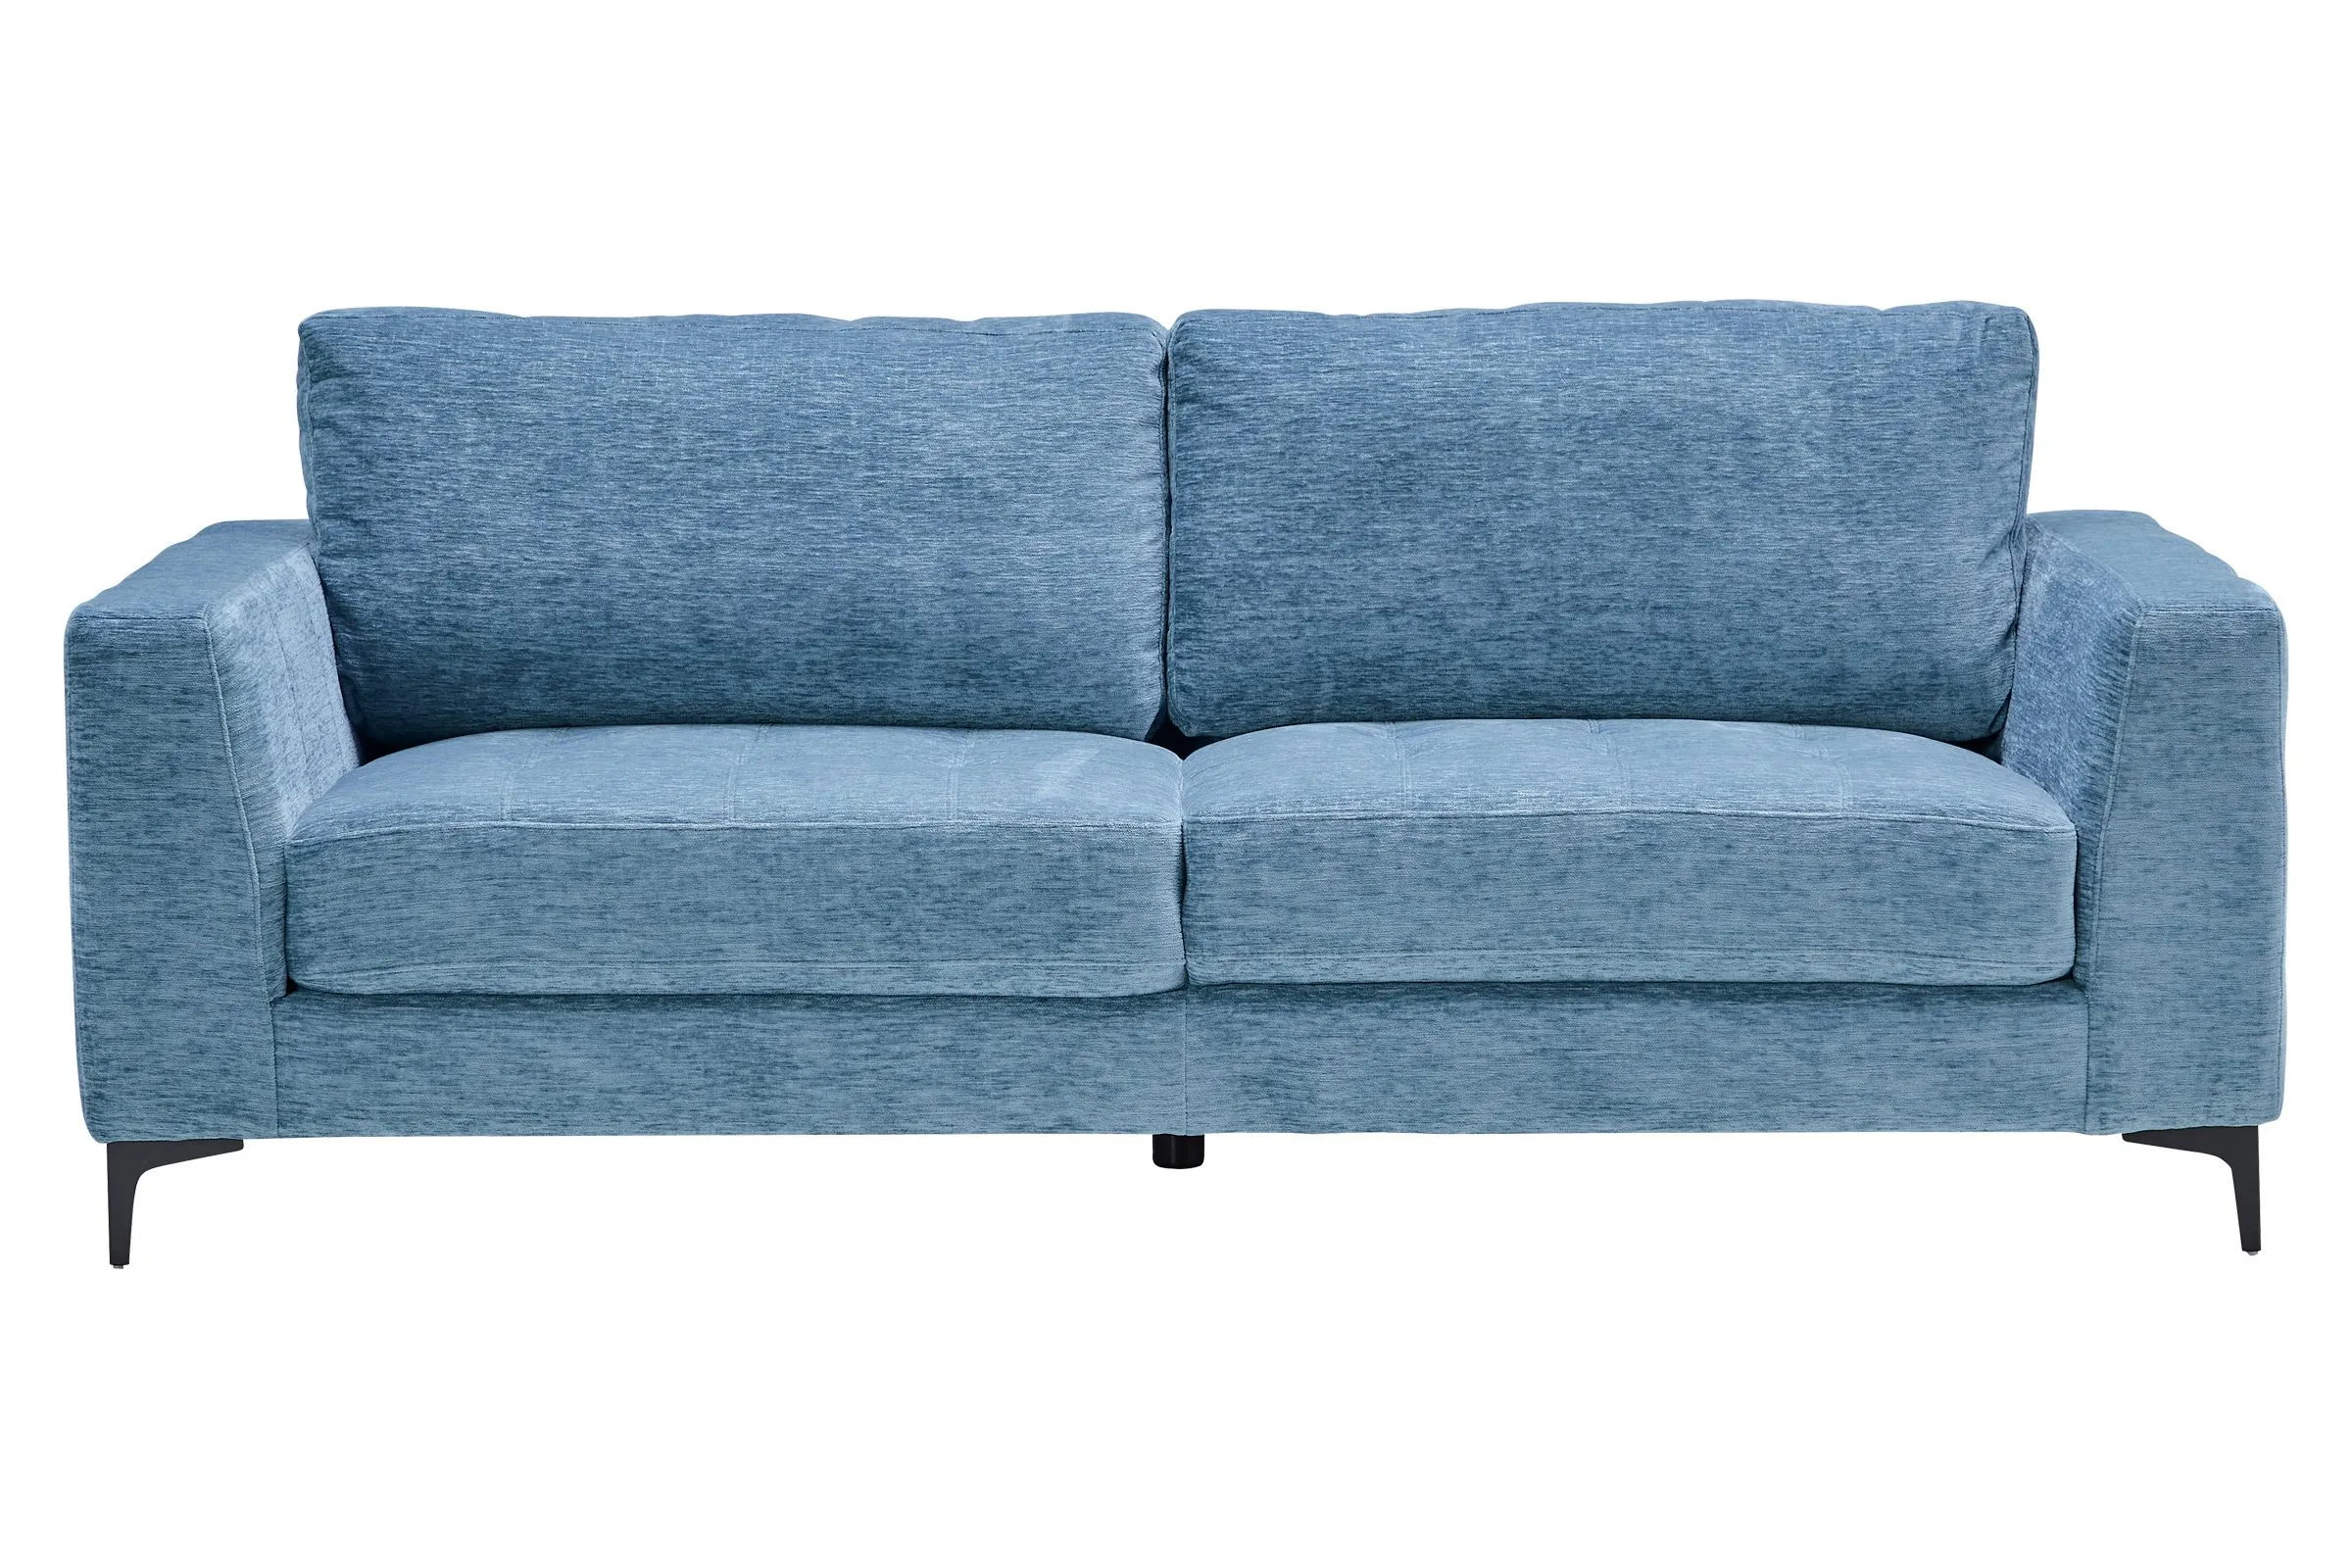 Wren Mist Sofa